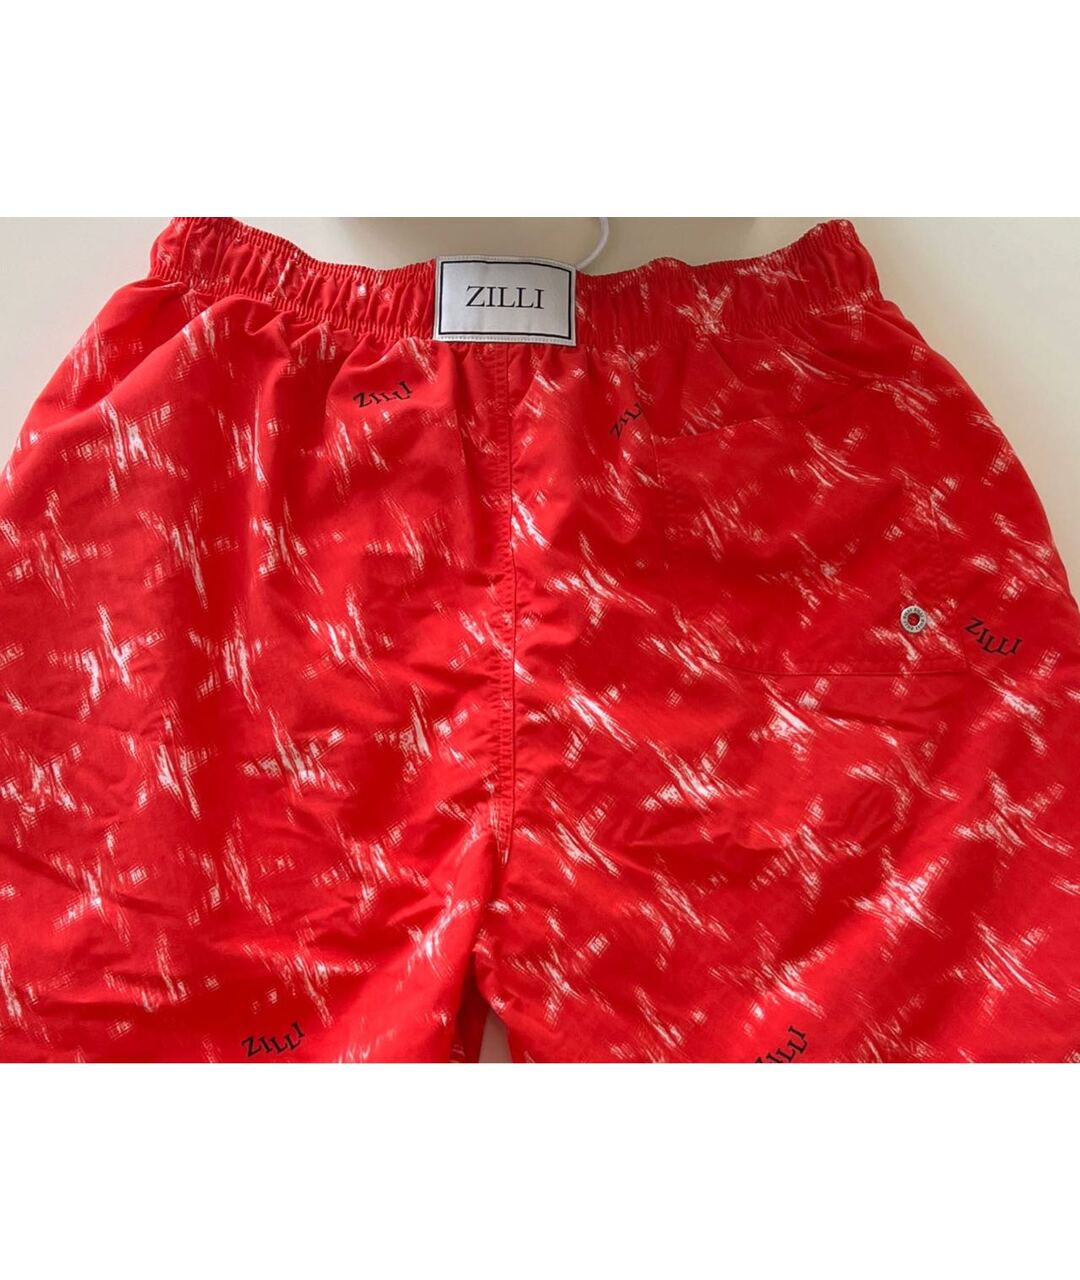 ZILLI Красные полиамидовые шорты, фото 2